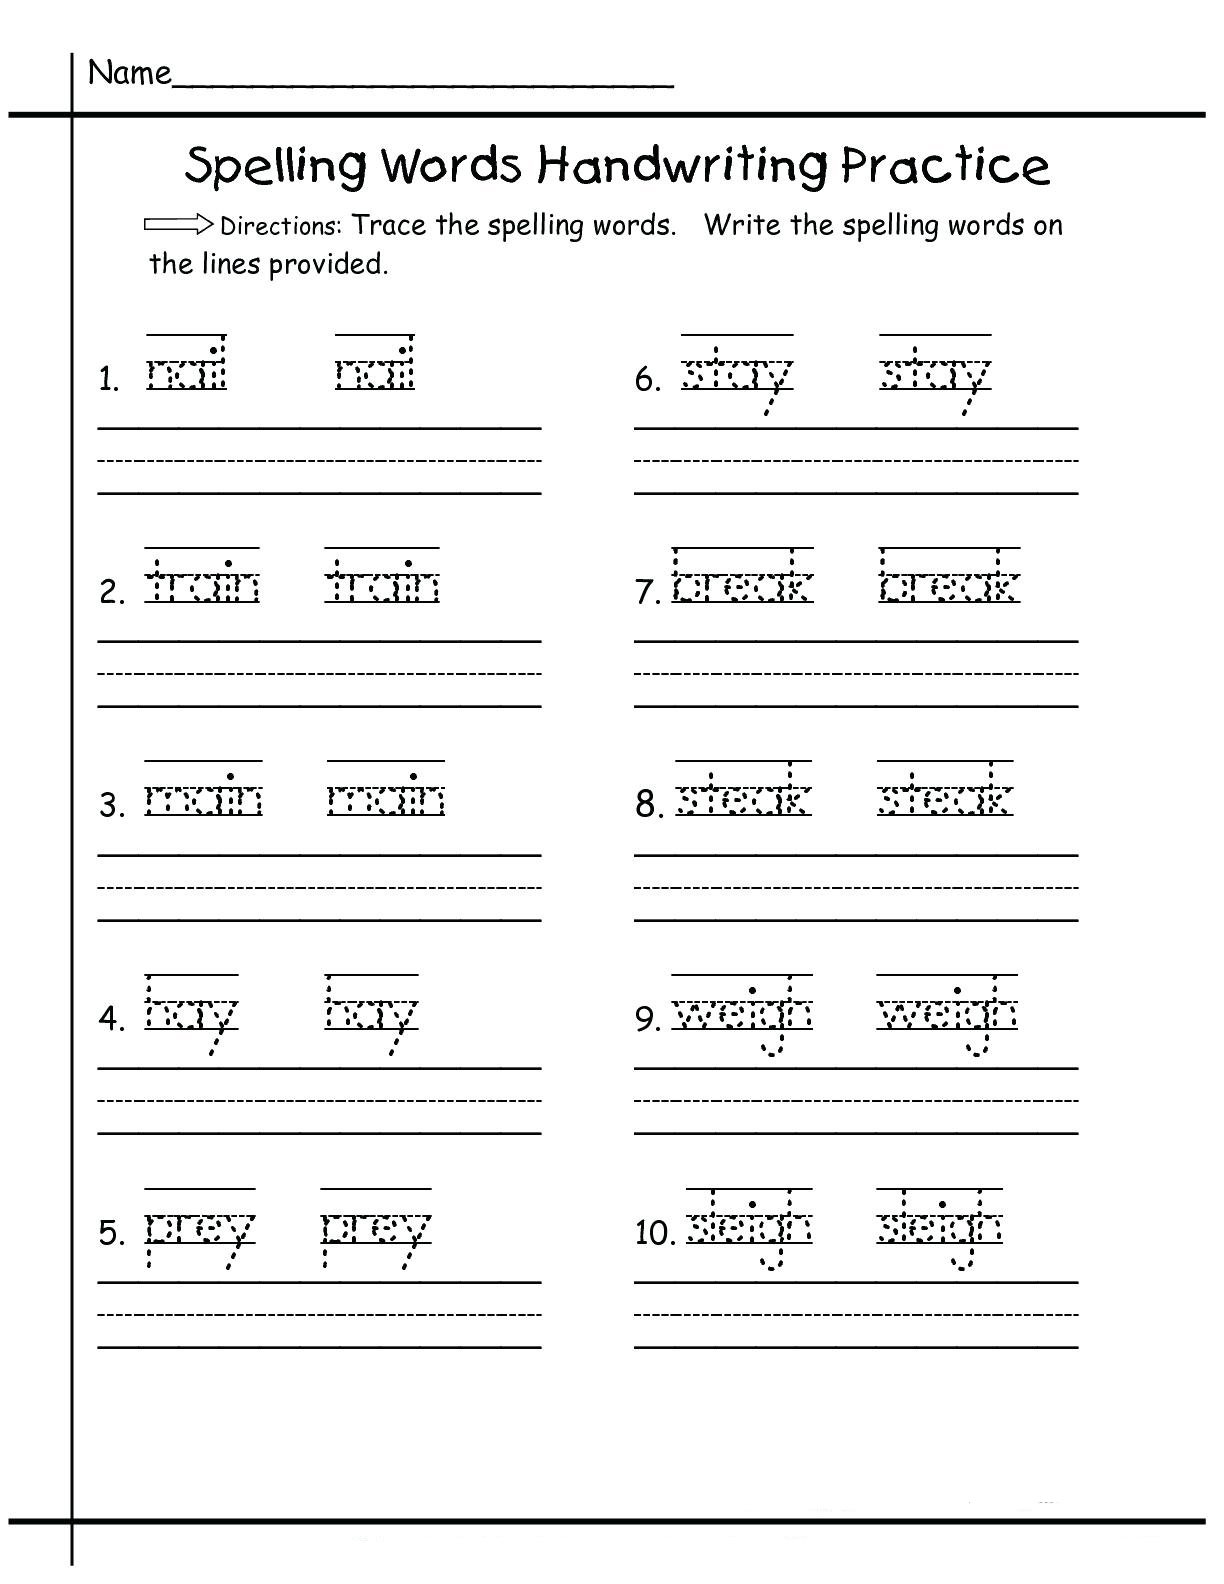 printable-handwriting-worksheets-for-kids-free-printable-worksheet